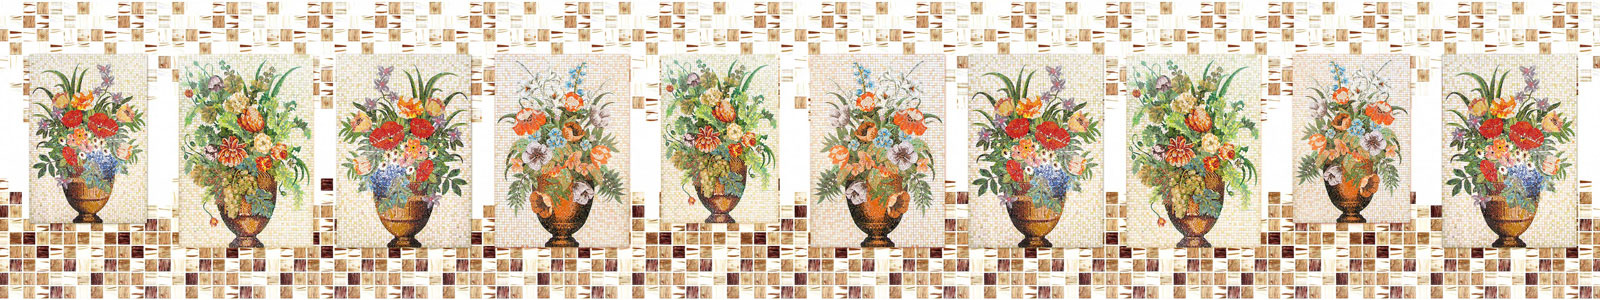 №5584 - Цветы в вазах мозаикой на стене из мелкой плитки